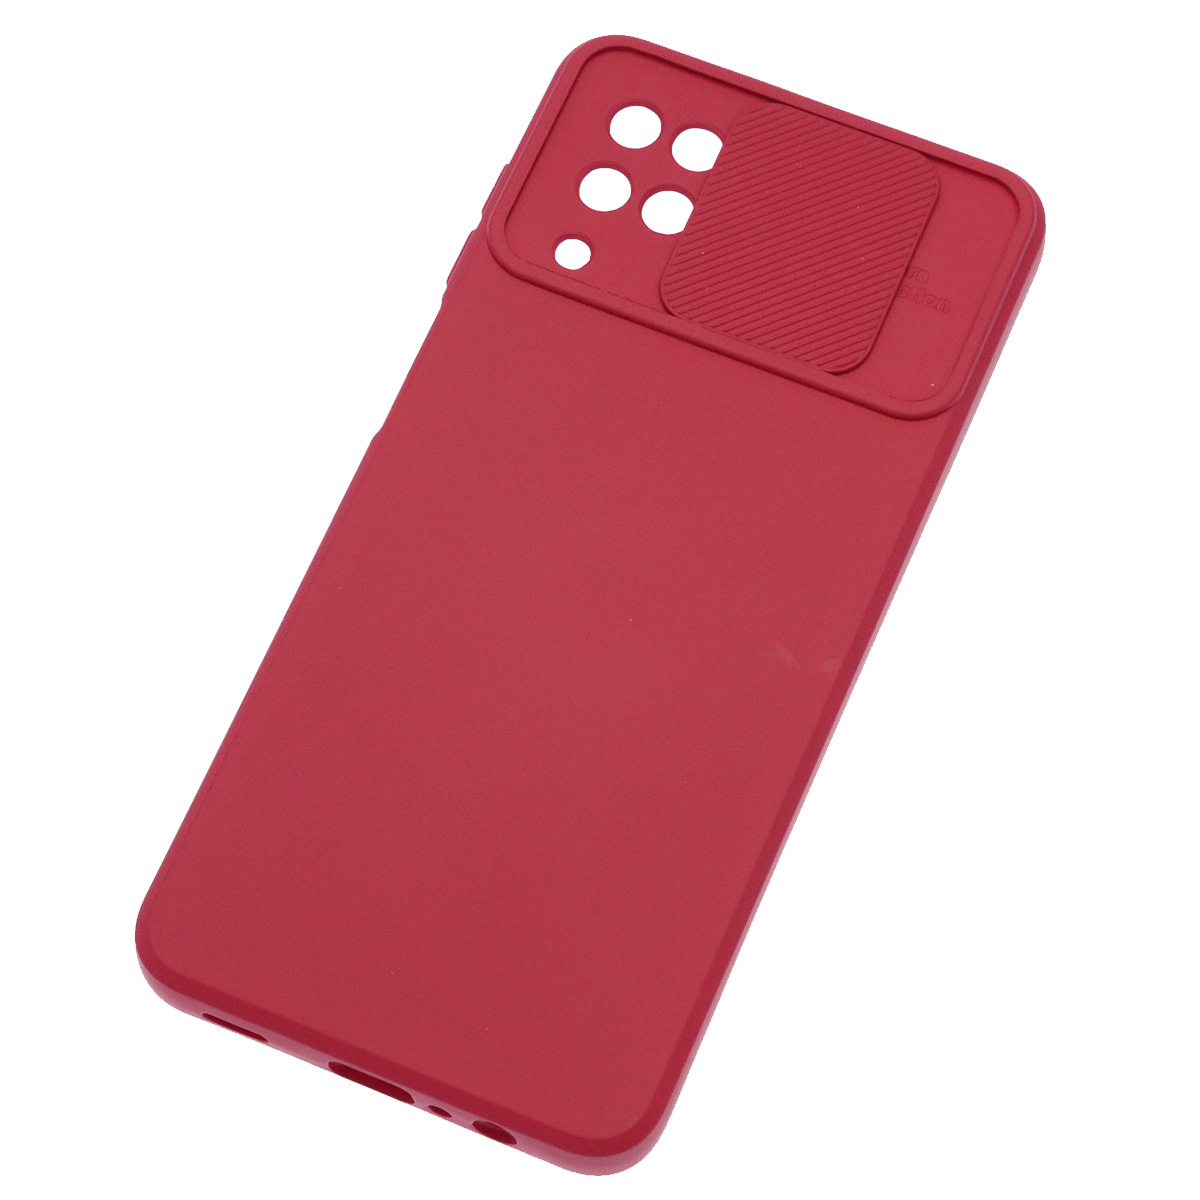 Чехол накладка для SAMSUNG Galaxy A12, M12, силикон, бархат, со шторкой для защиты задней камеры, цвет вишневый